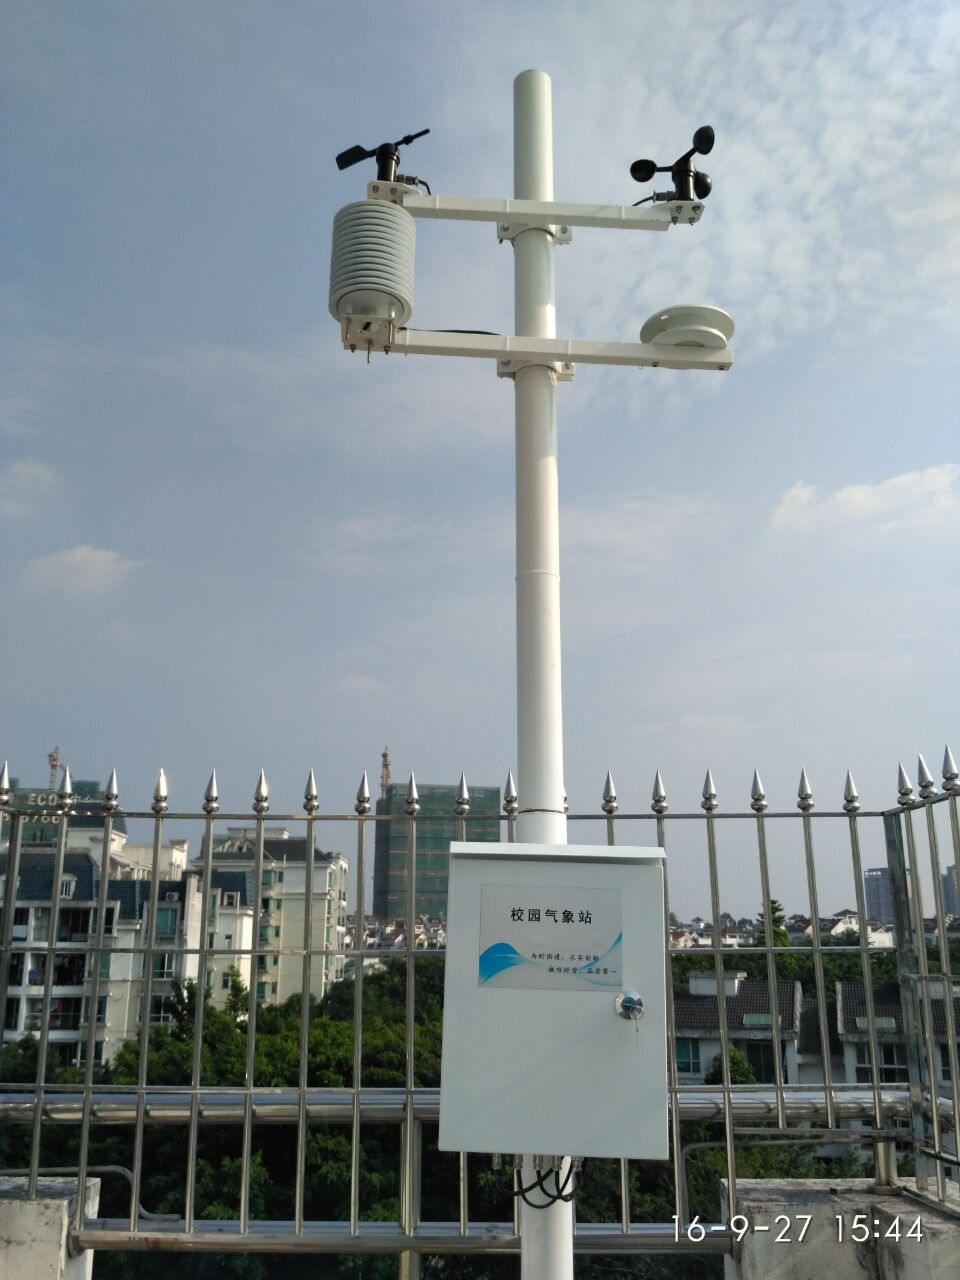 自动气象站气象环境监测设备